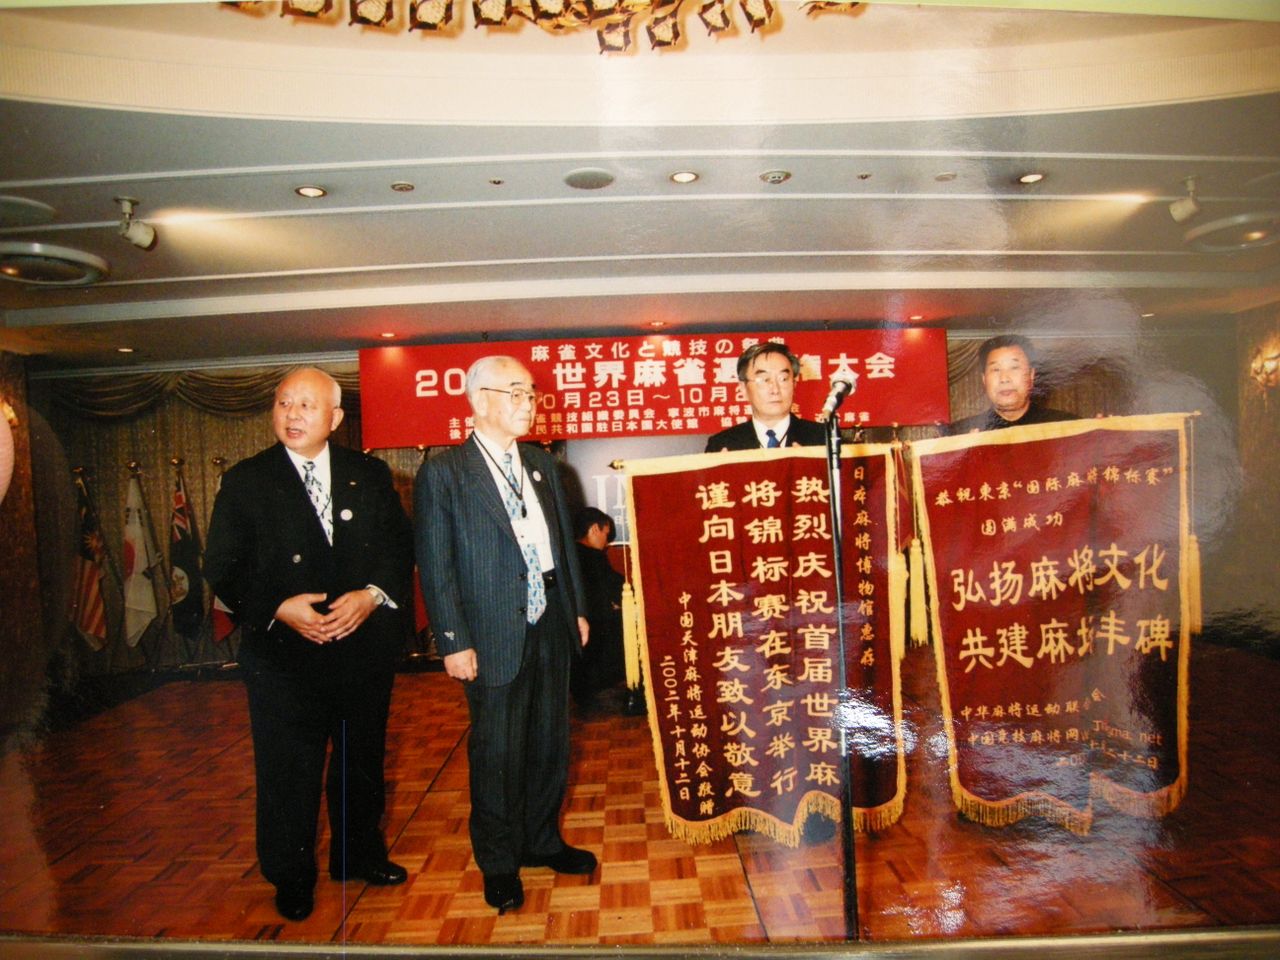 大隈秀夫(左二)接受中國麻將組織的錦旗